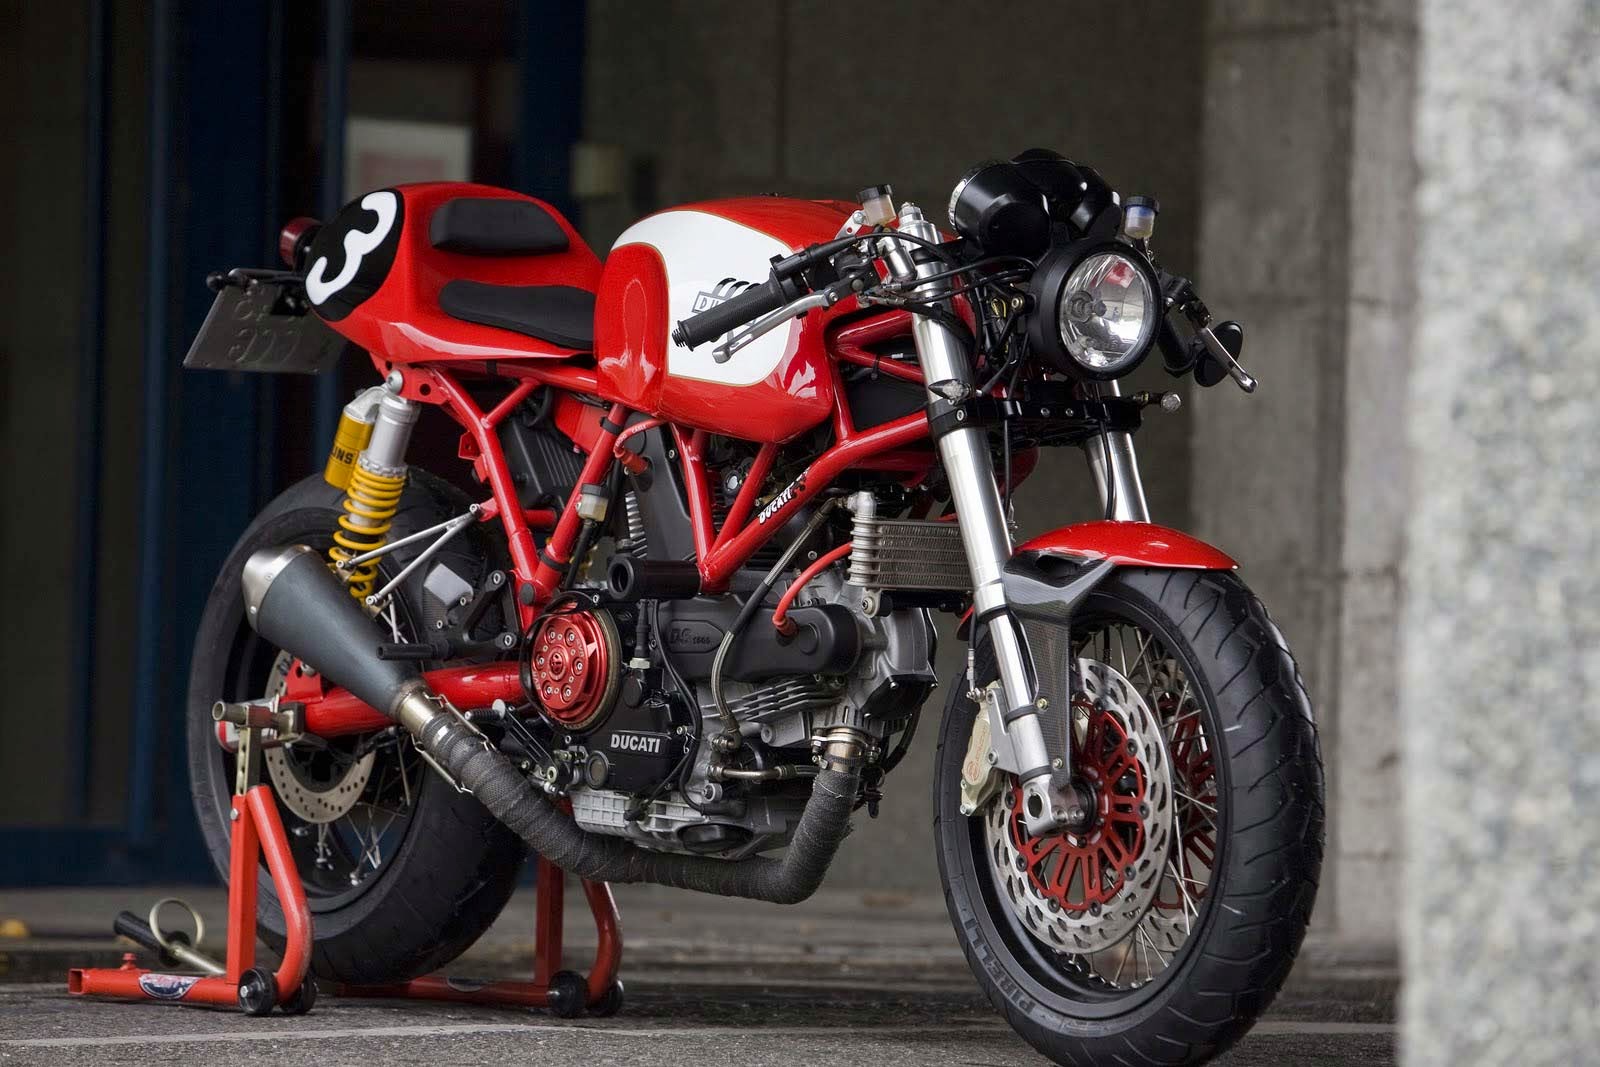 Koleksi Modifikasi Motor Byson Ducati Terbaru Dan Terlengkap